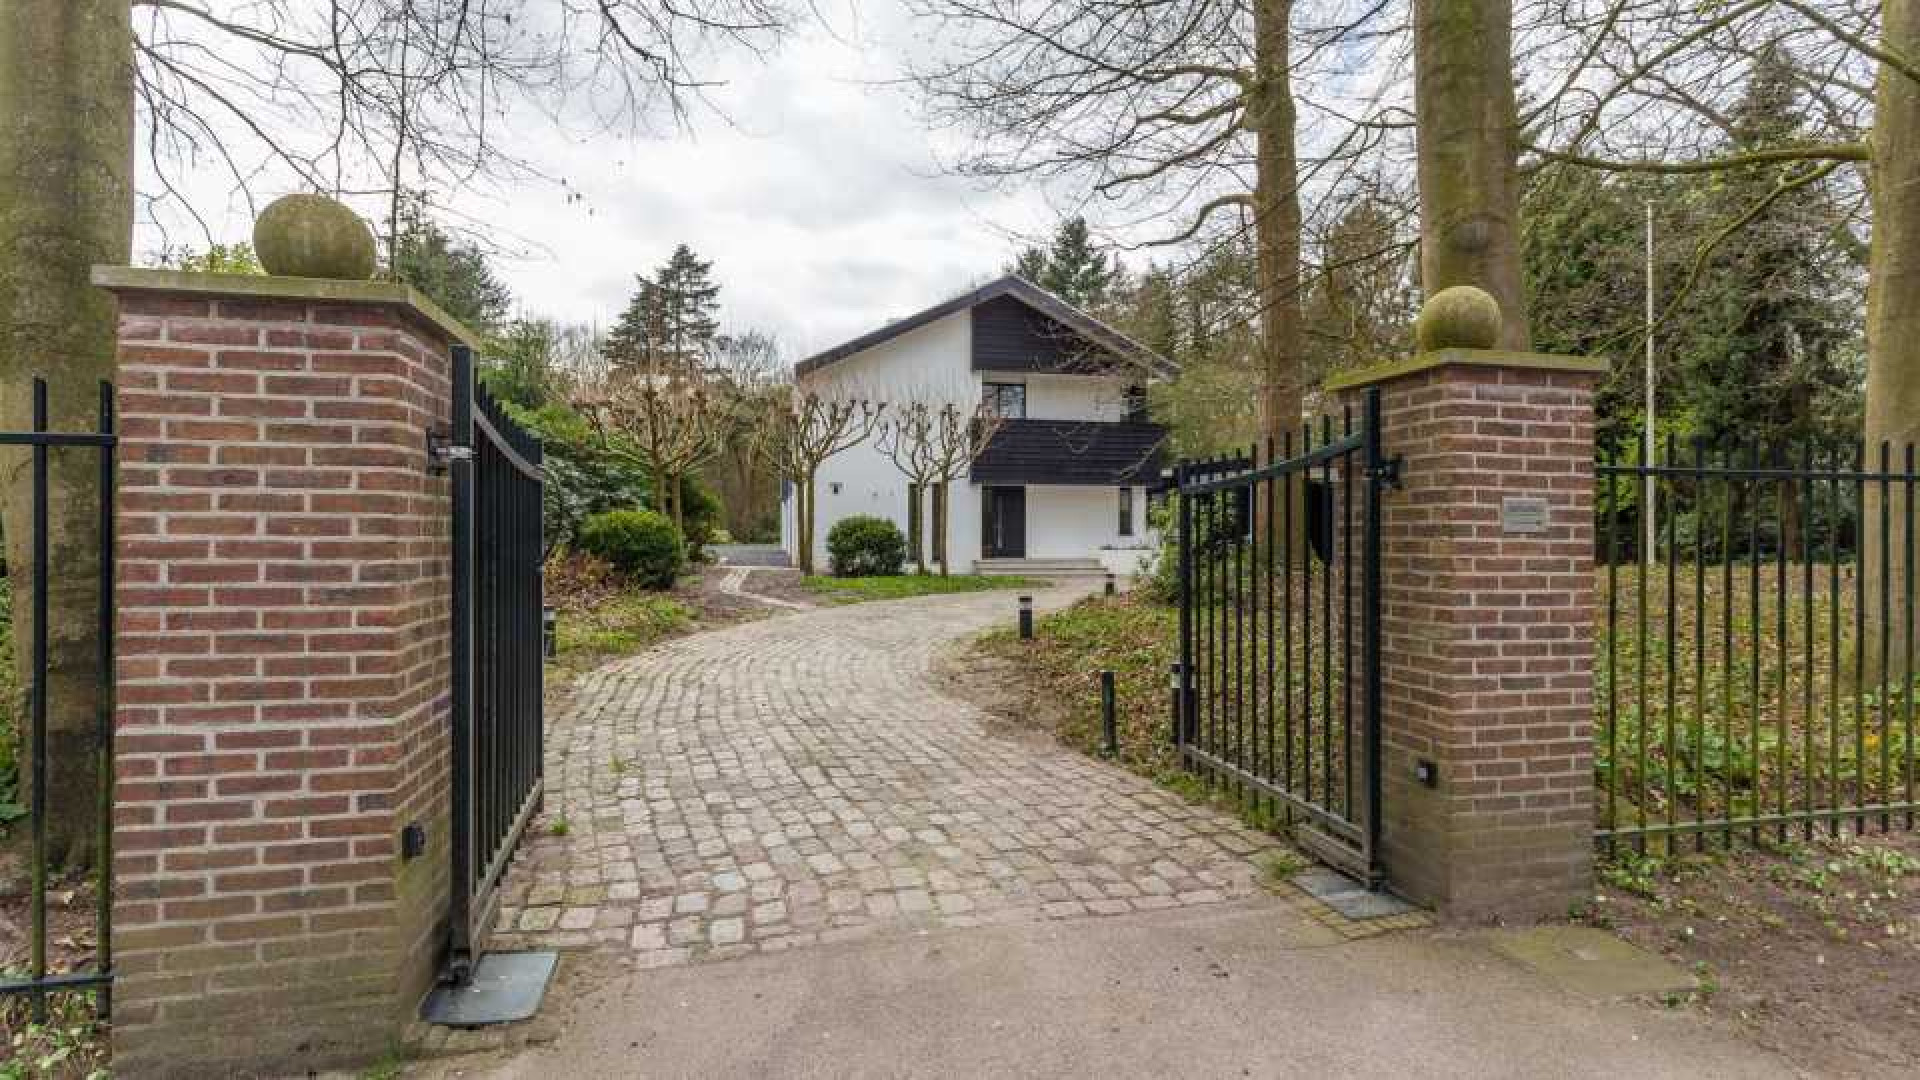 Villa waar Koen Everink zou gaan wonen verkocht. Zie foto's 1